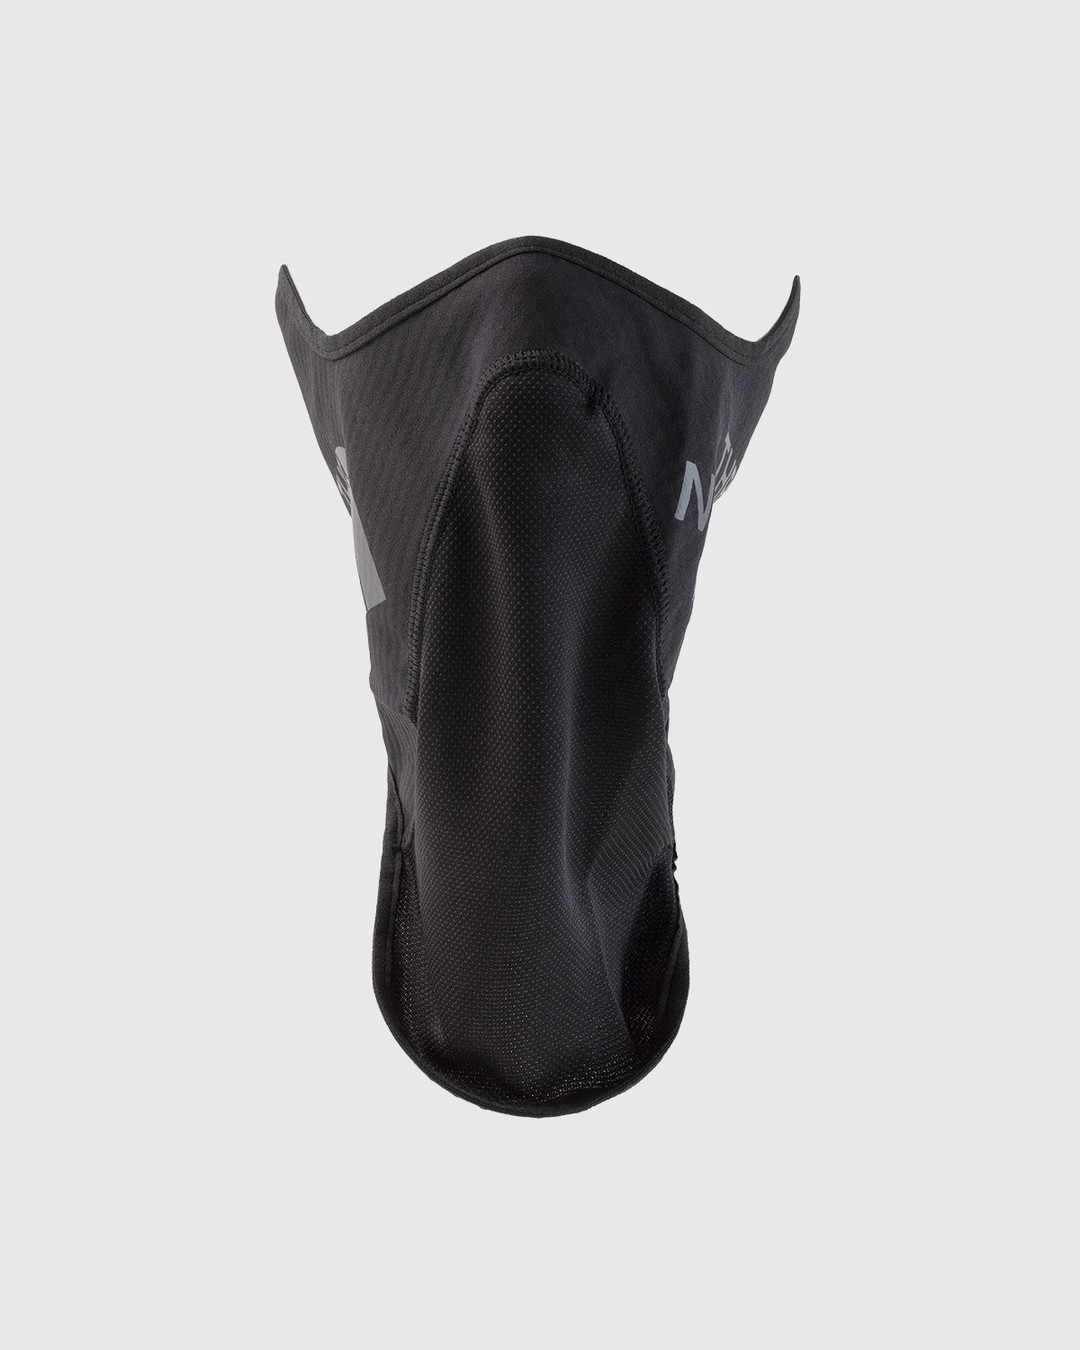 The North Face – Shredder Ski Mask Black | Highsnobiety Shop